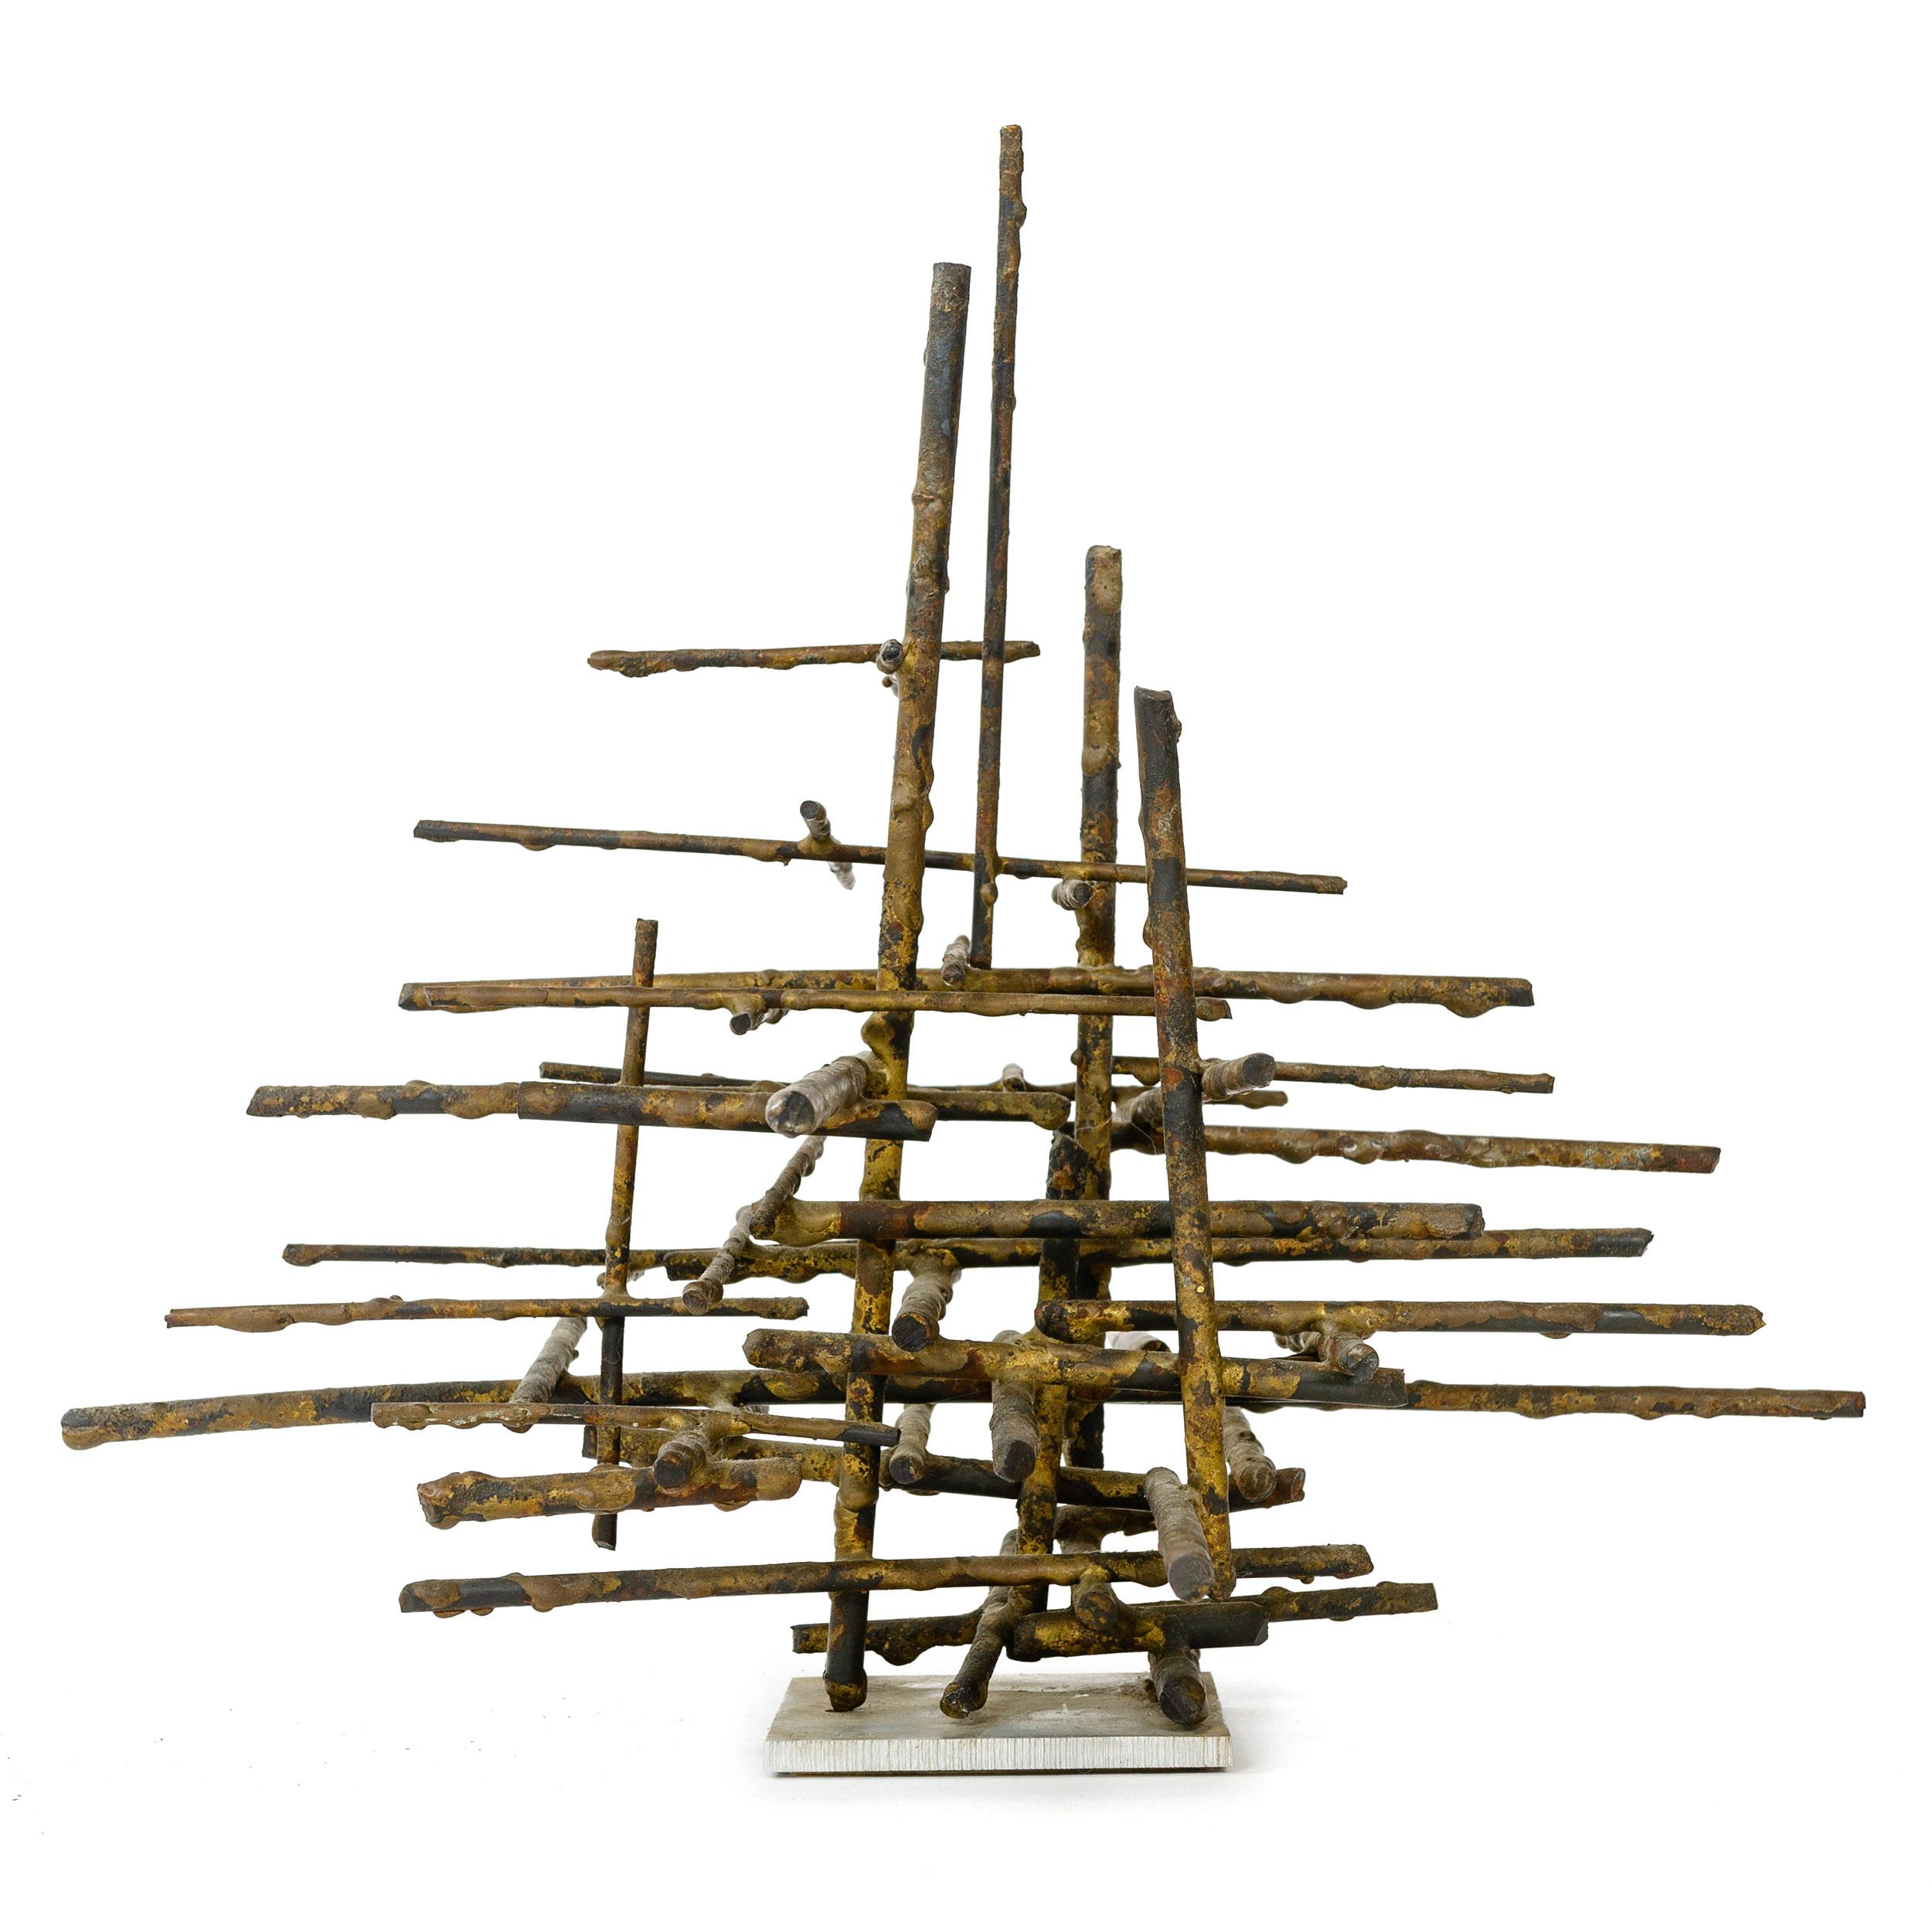 Sculpture de table brutaliste composée d'un assemblage linéaire de tiges de bronze de différentes longueurs empilées sur une base carrée en aluminium. Les lettres 